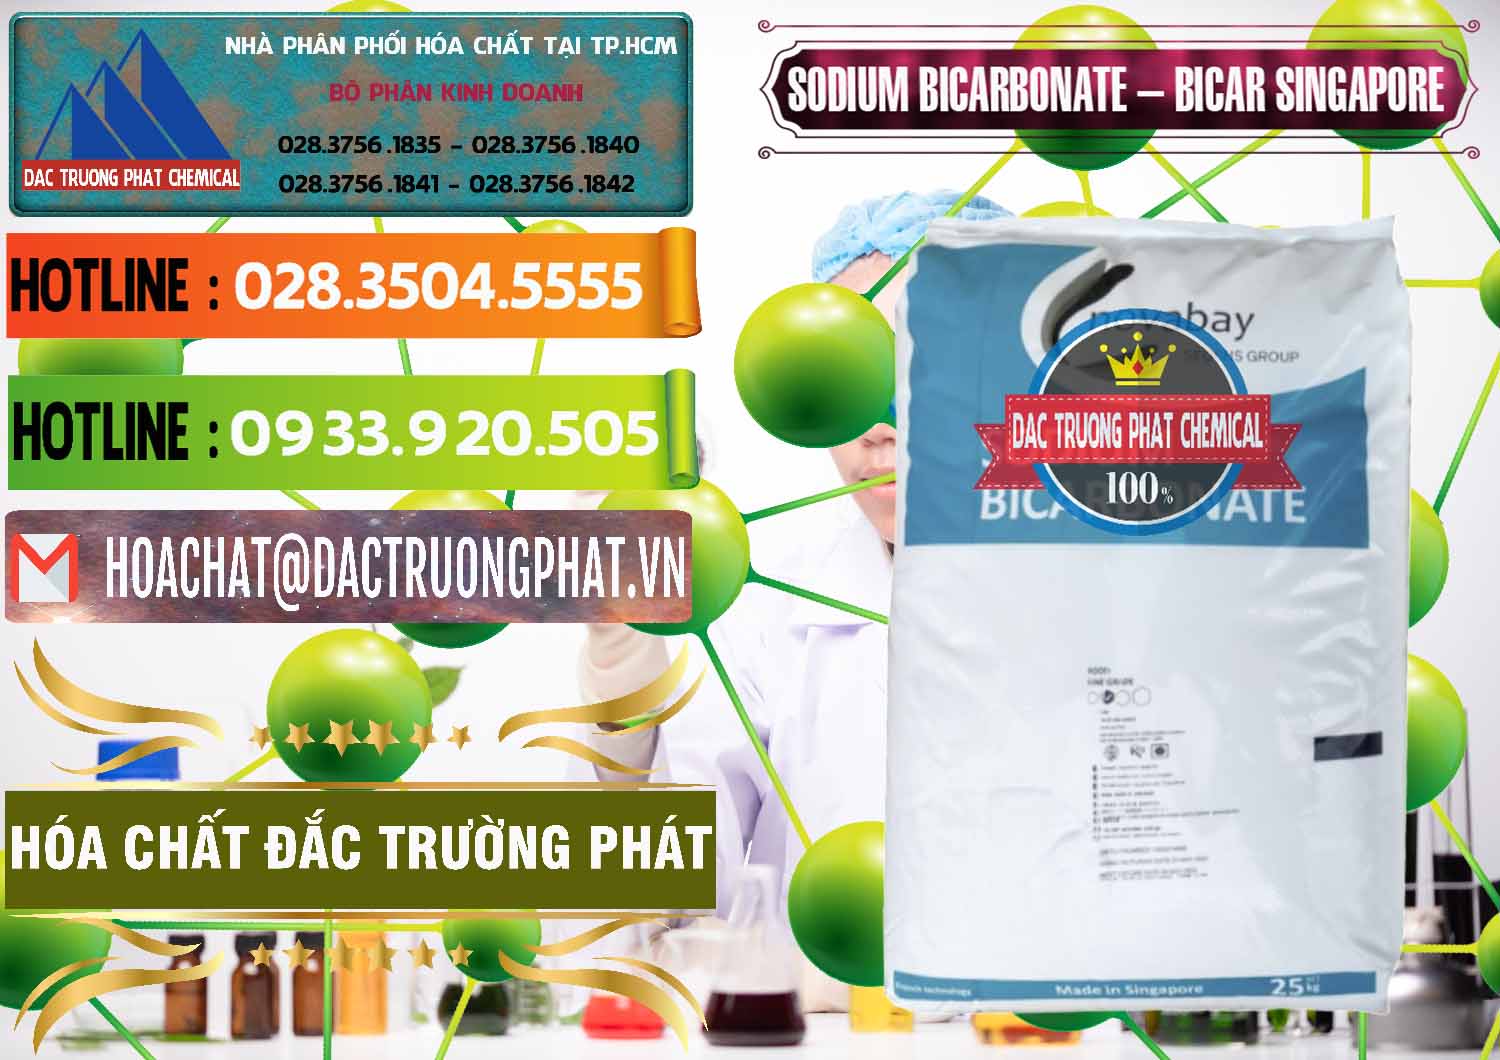 Cty chuyên bán _ cung cấp Sodium Bicarbonate – Bicar NaHCO3 Singapore - 0411 - Công ty chuyên bán - phân phối hóa chất tại TP.HCM - cungcaphoachat.com.vn